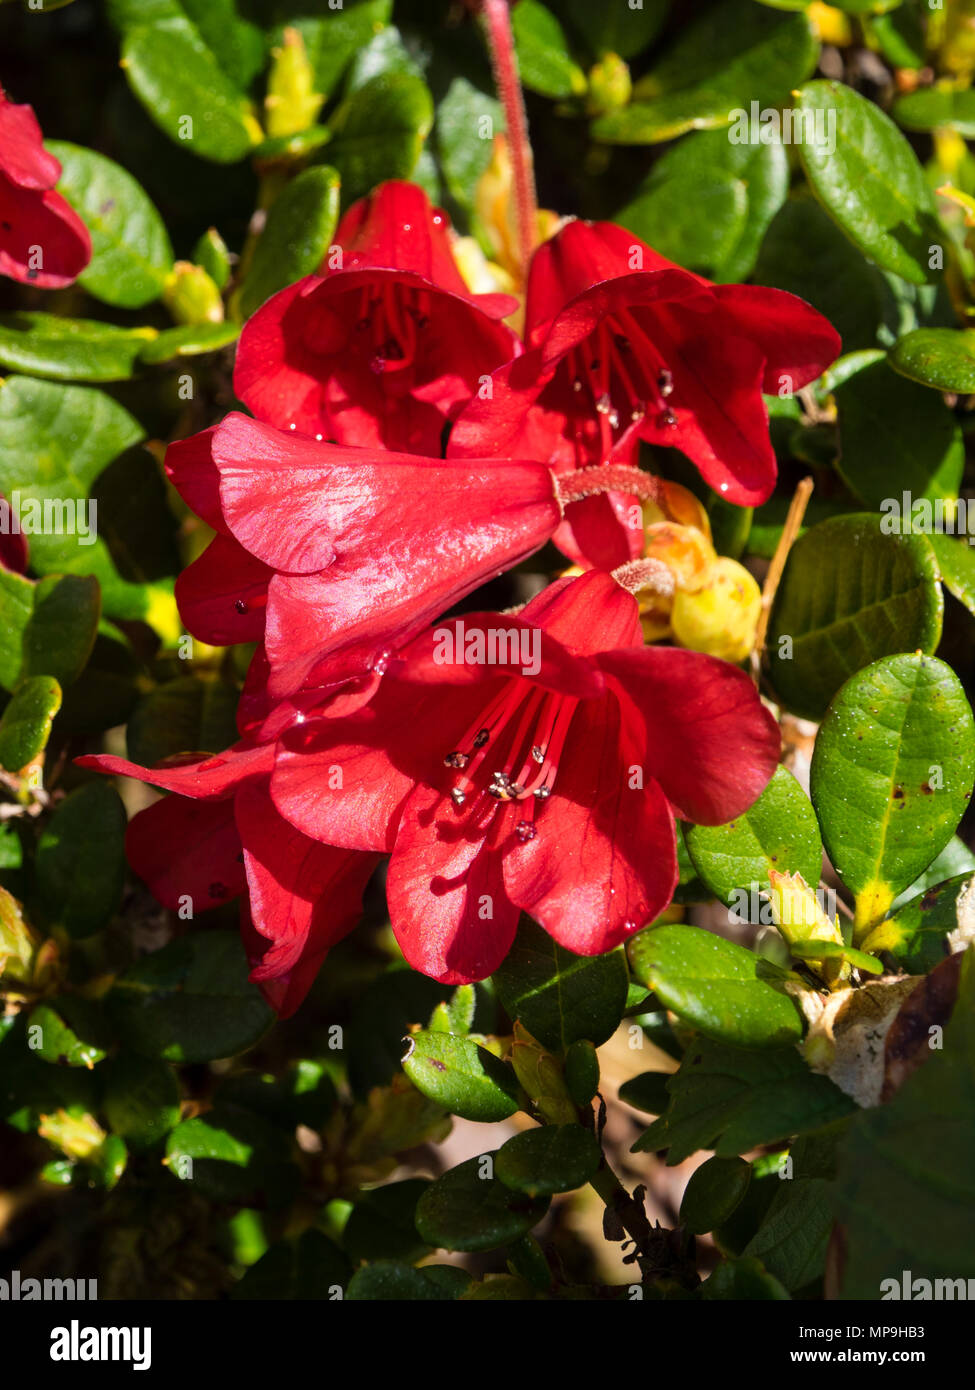 Fiori rossi schierati in piccole capriate di compact evergreen, rododendro 'Scarlet Wonder' Foto Stock